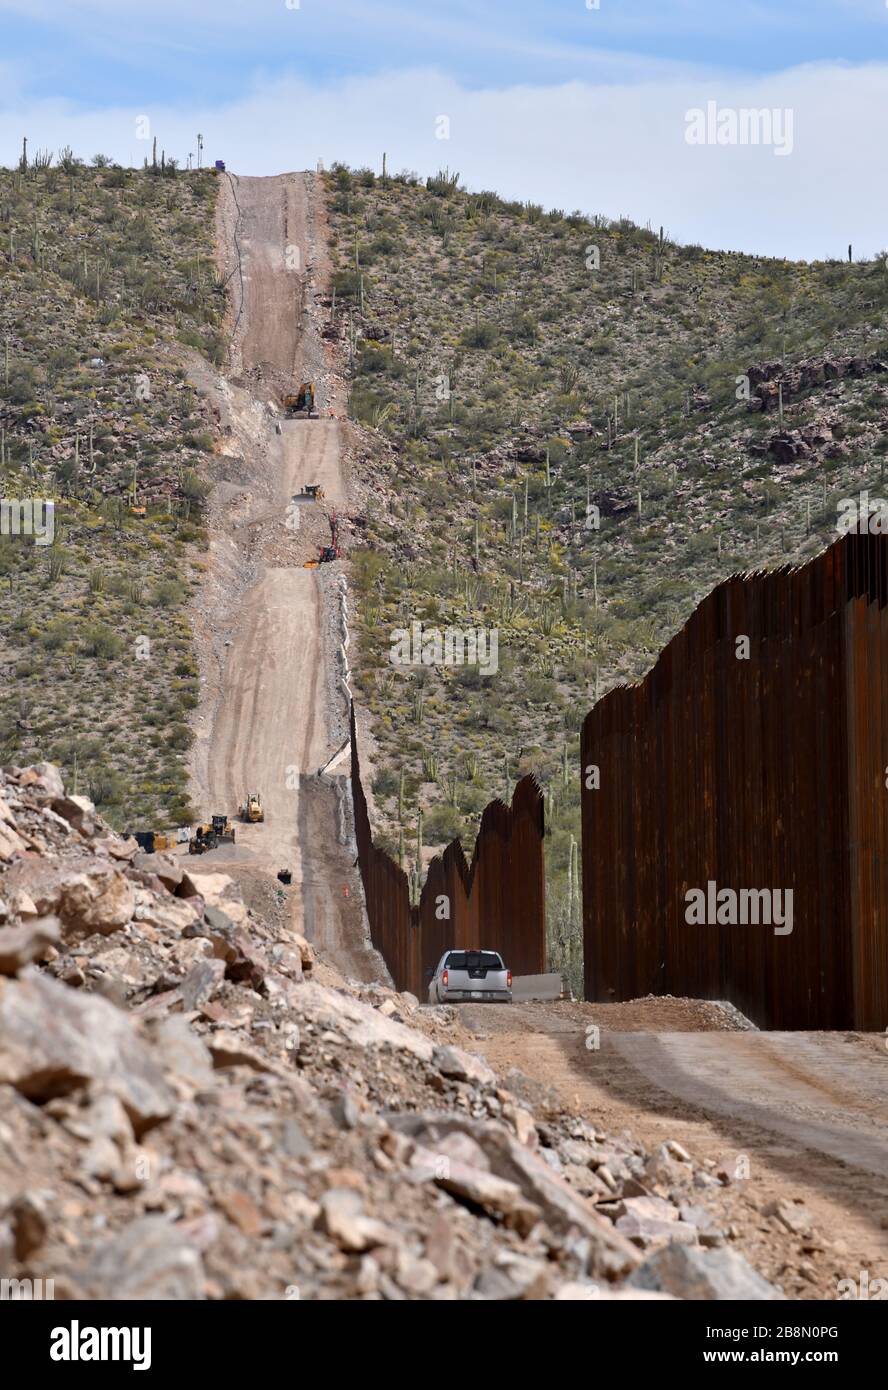 La construction d'un mur de bordure métallique dans le monument national de Cactus, dans le désert de Sonoran, à Luqueville, Arizona, aux États-Unis, sépare les États-Unis de Sonoyta Banque D'Images